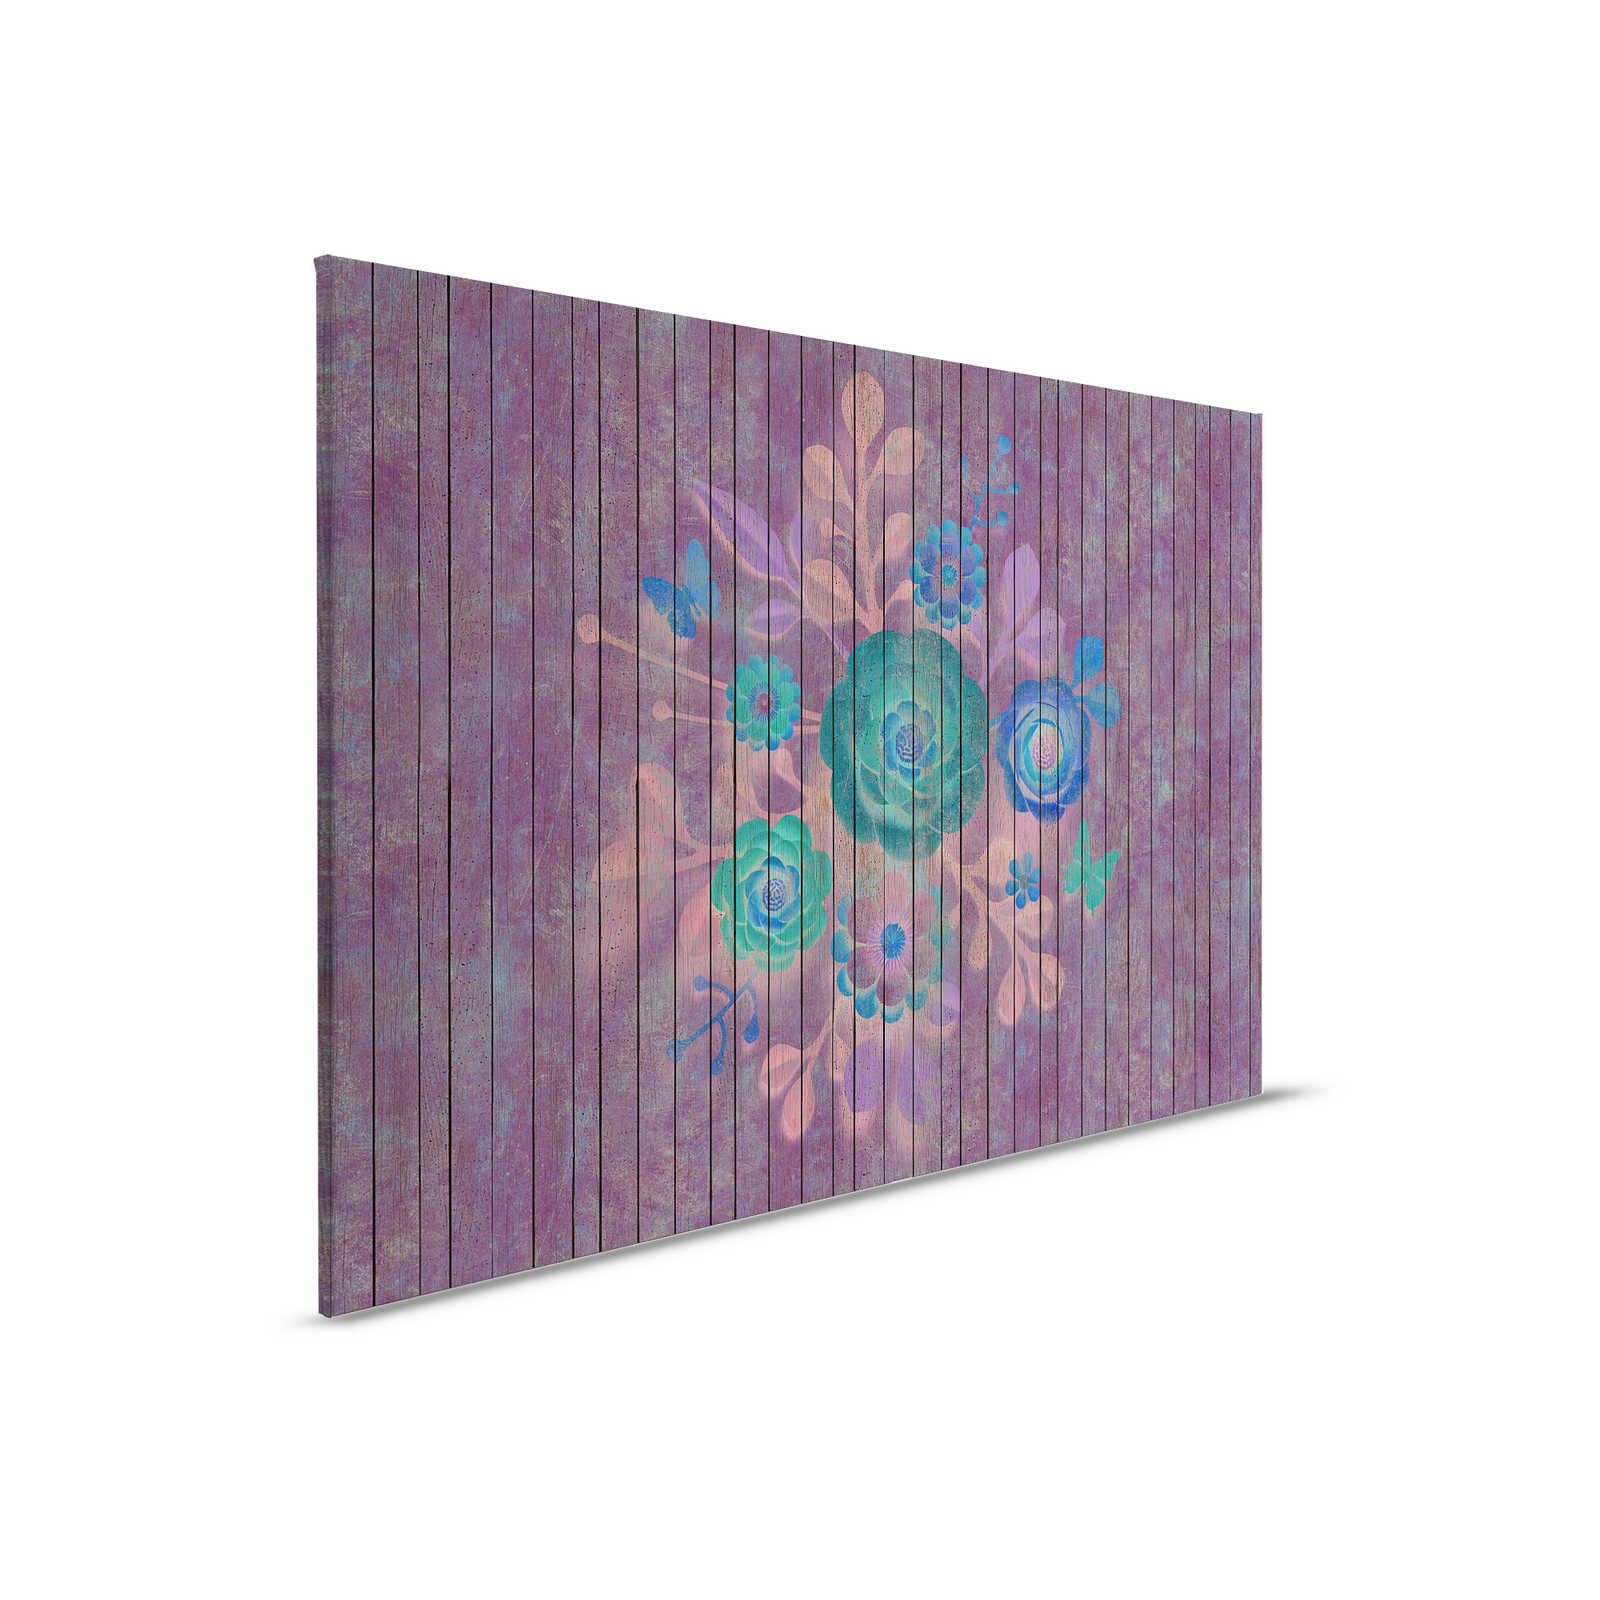 Spray bouquet 1 - toile avec fleurs sur panneau - panneaux de bois large - 0,90 m x 0,60 m
